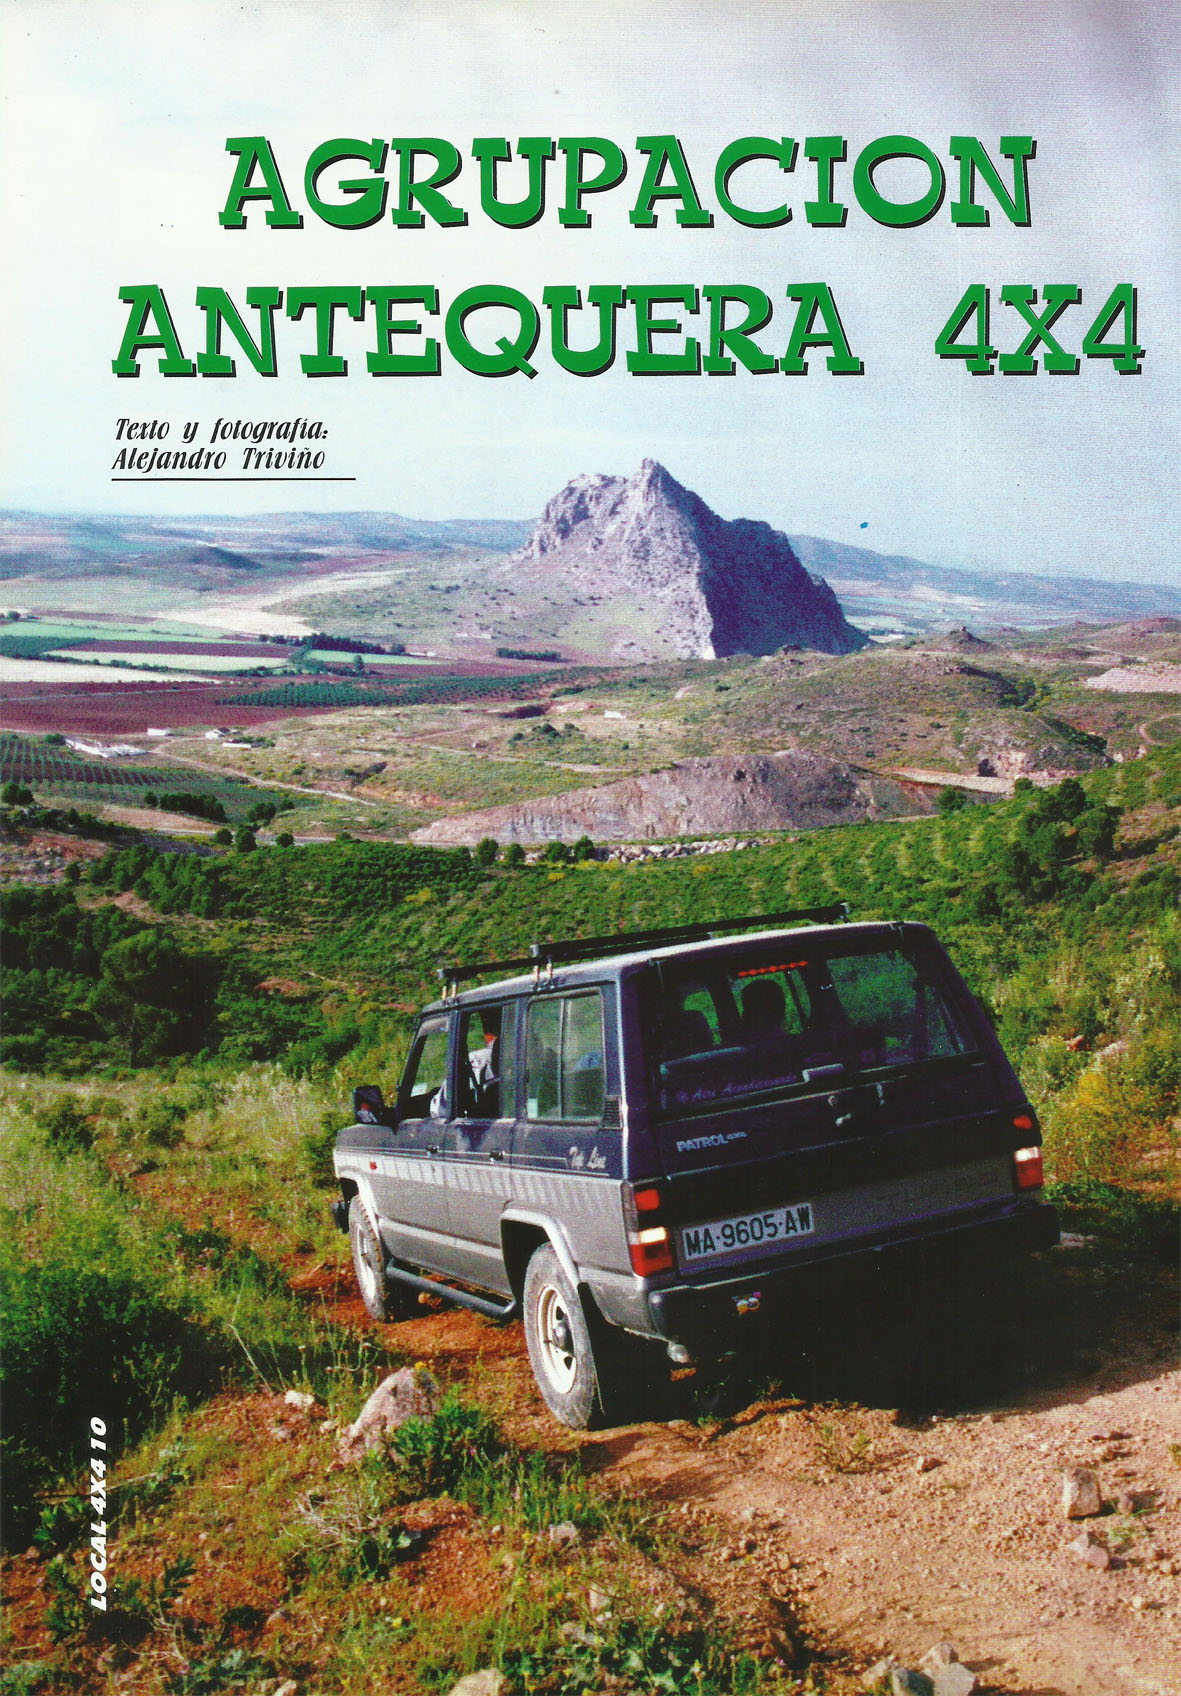 Revista Local 4x4 32 10 Reportaje Agrupación Antequera 4x4